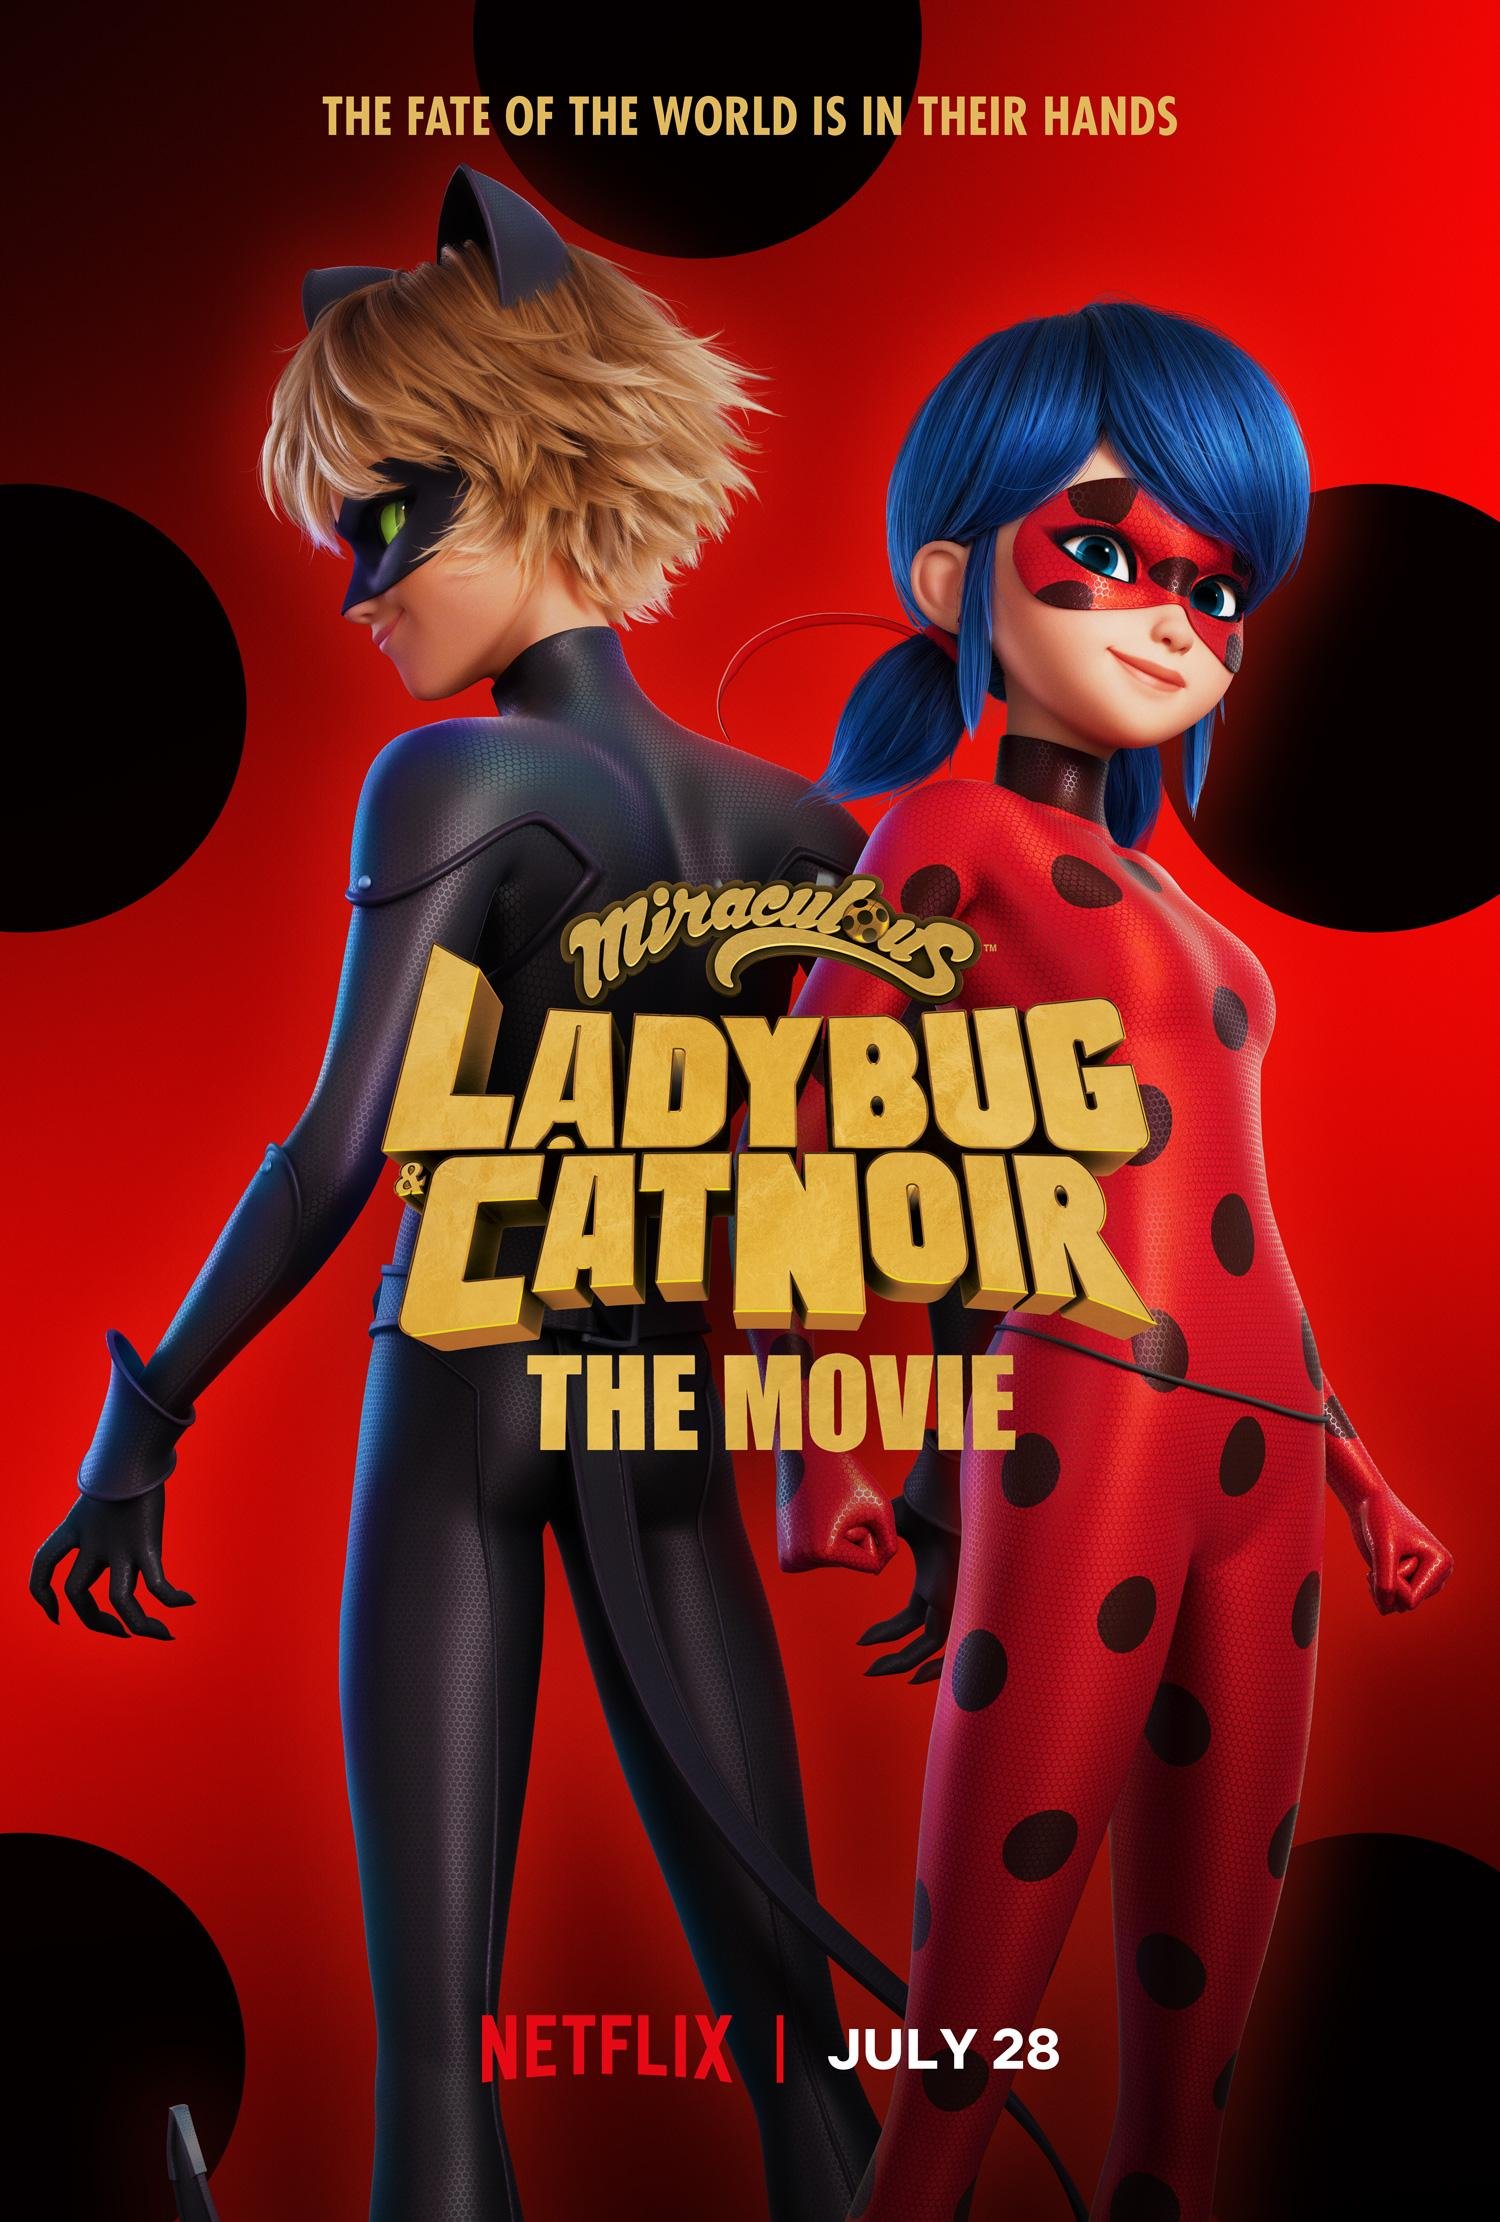 ლედი ბაგი და სუპერ კატა: გამოღვიძება /Ladybug & Cat Noir